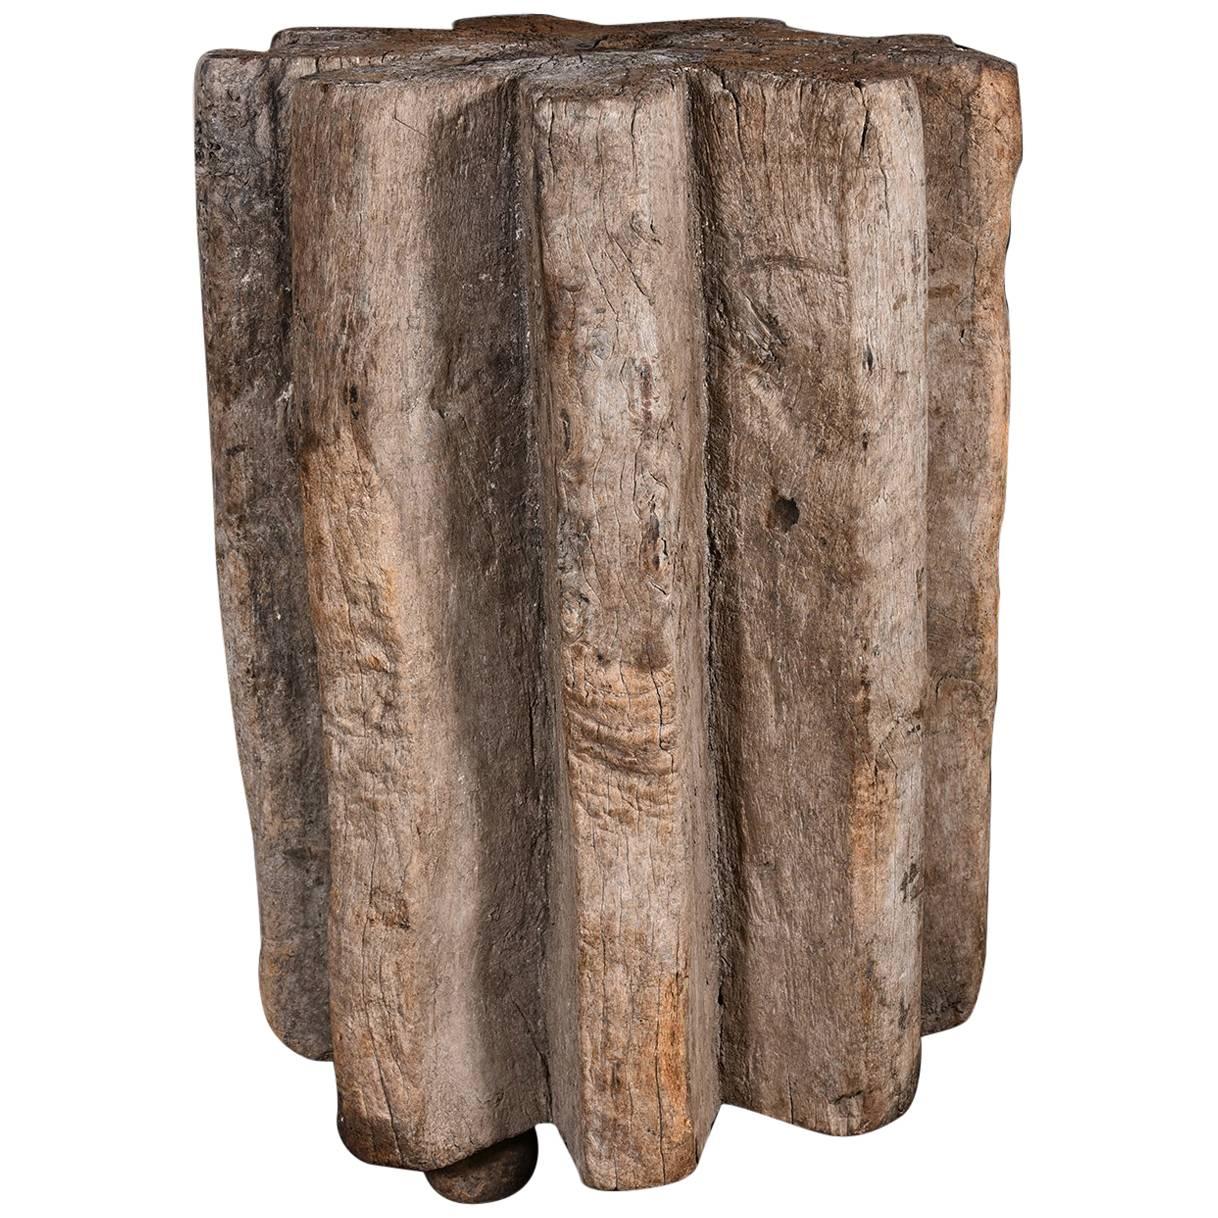 Primitive Wood Pedestal For Sale